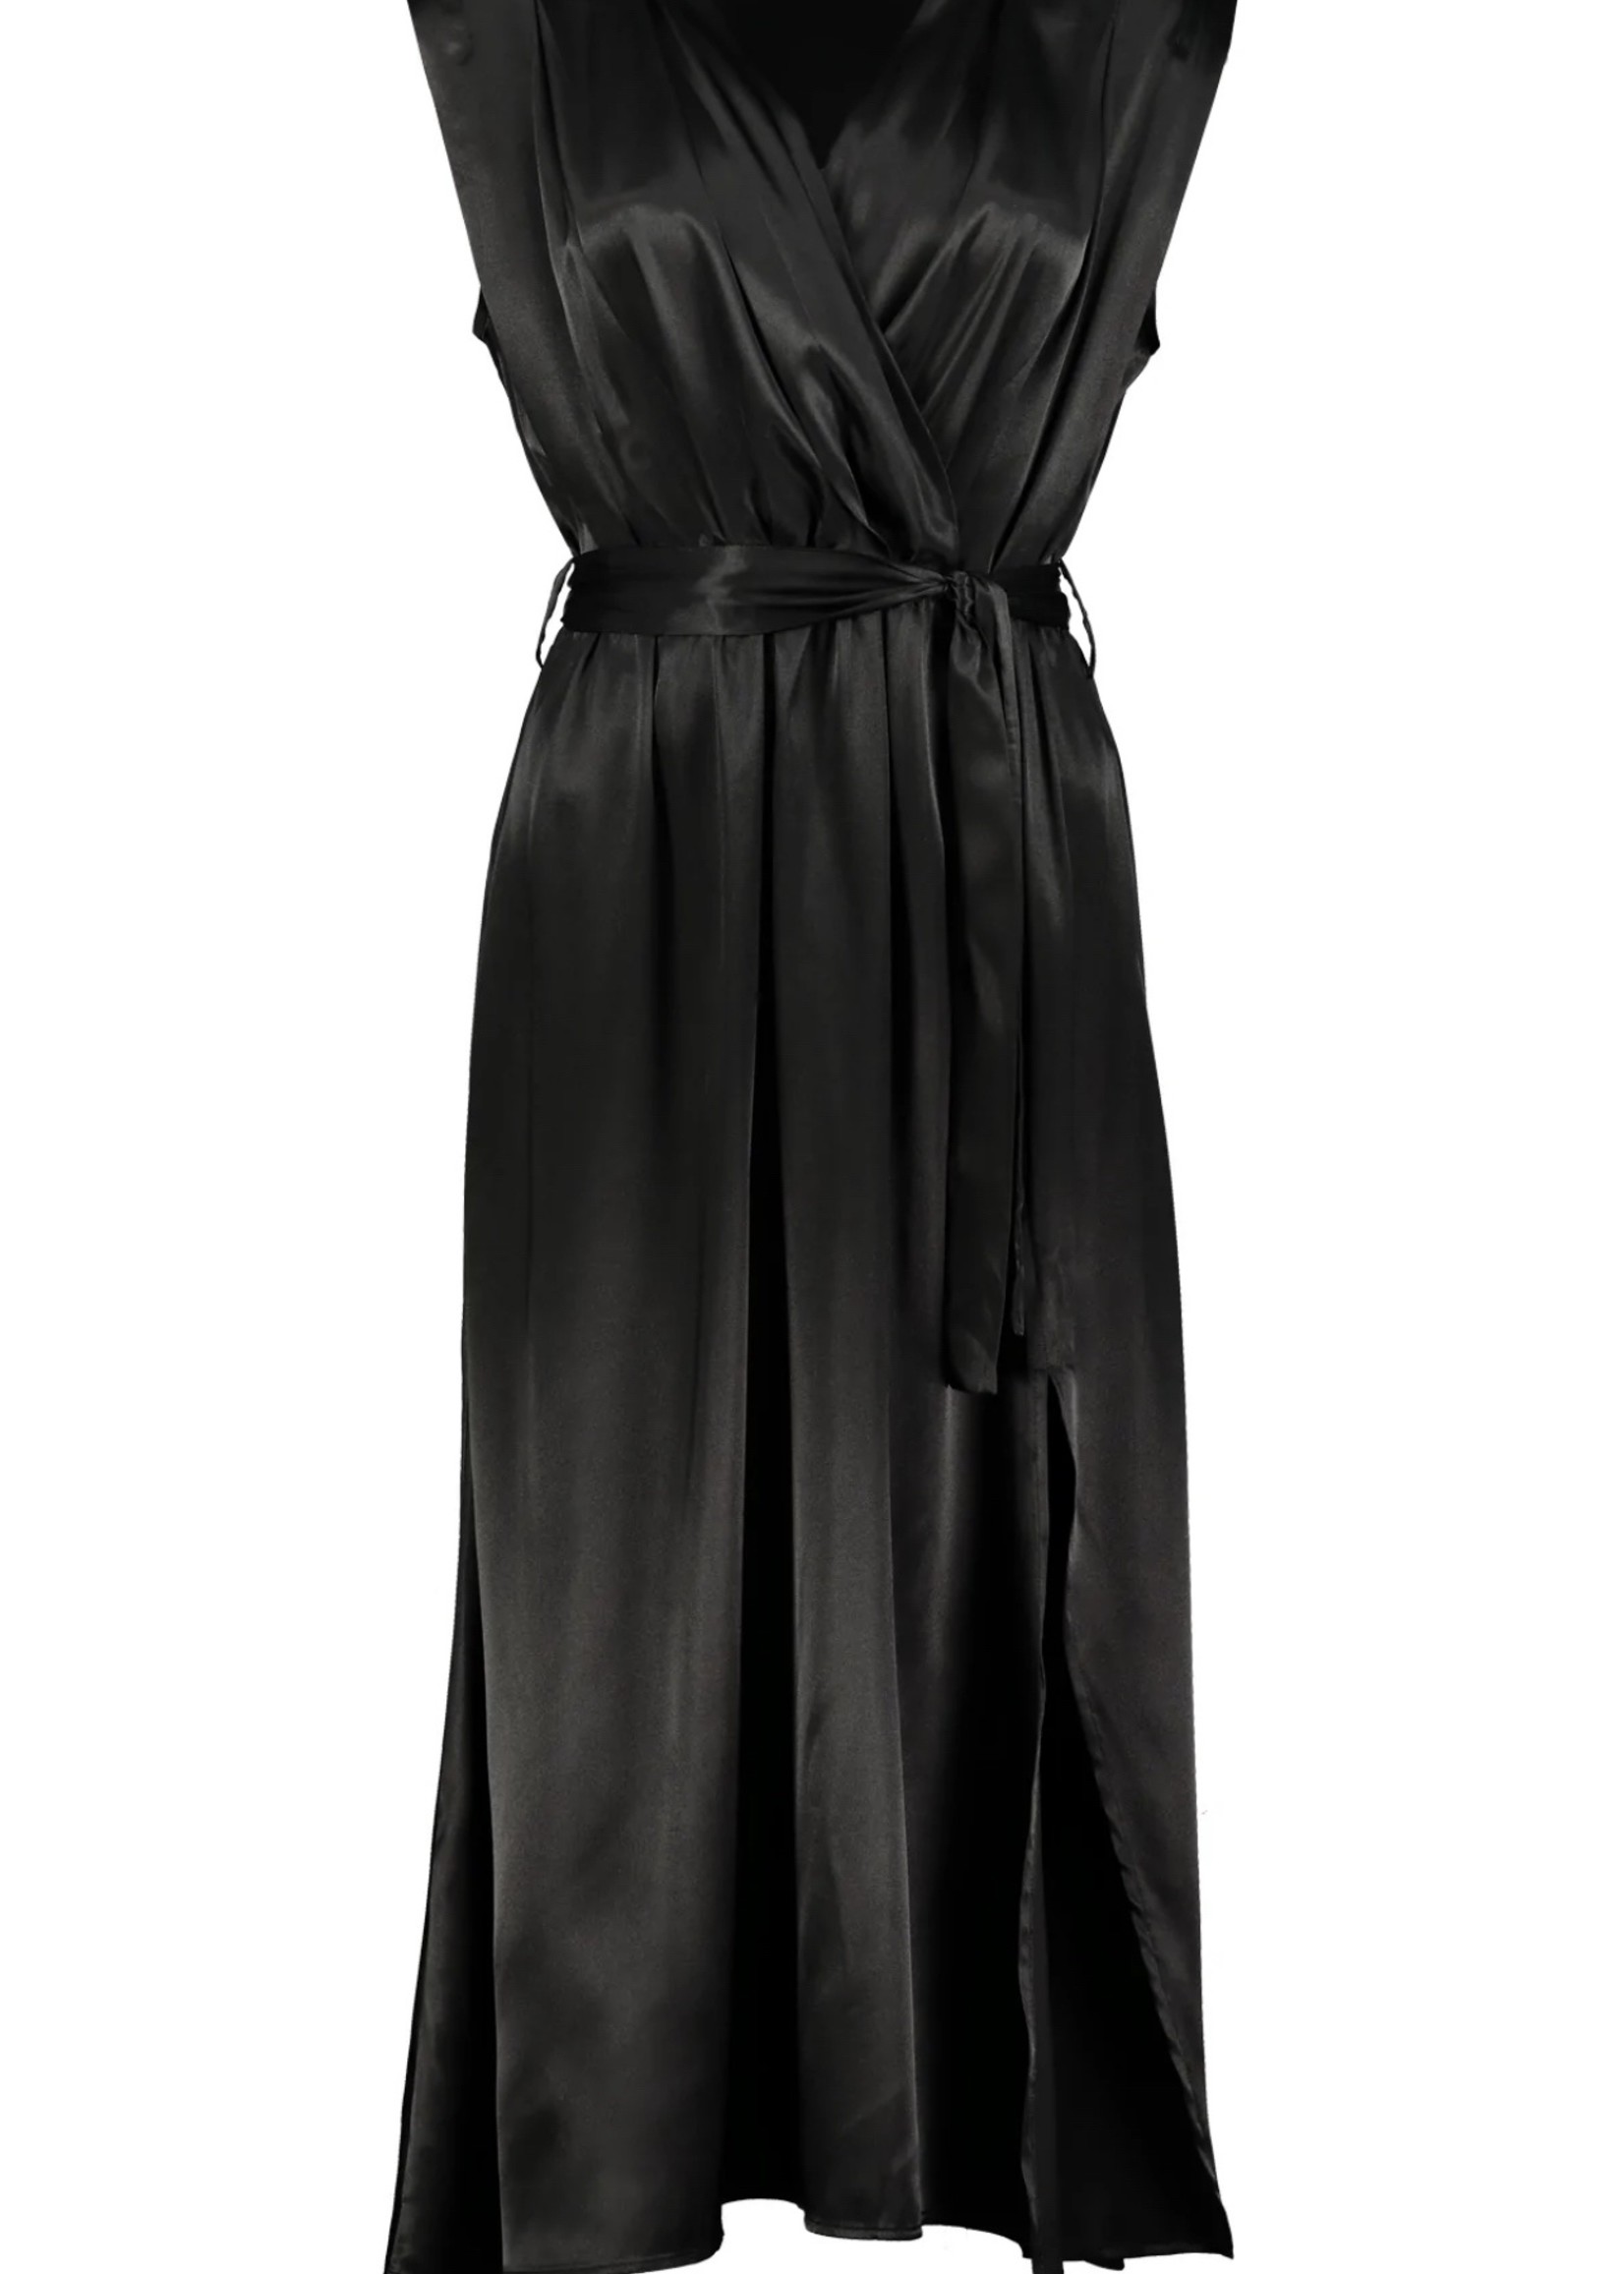 Elitaire Boutique Aeries Wrap Dress in Black